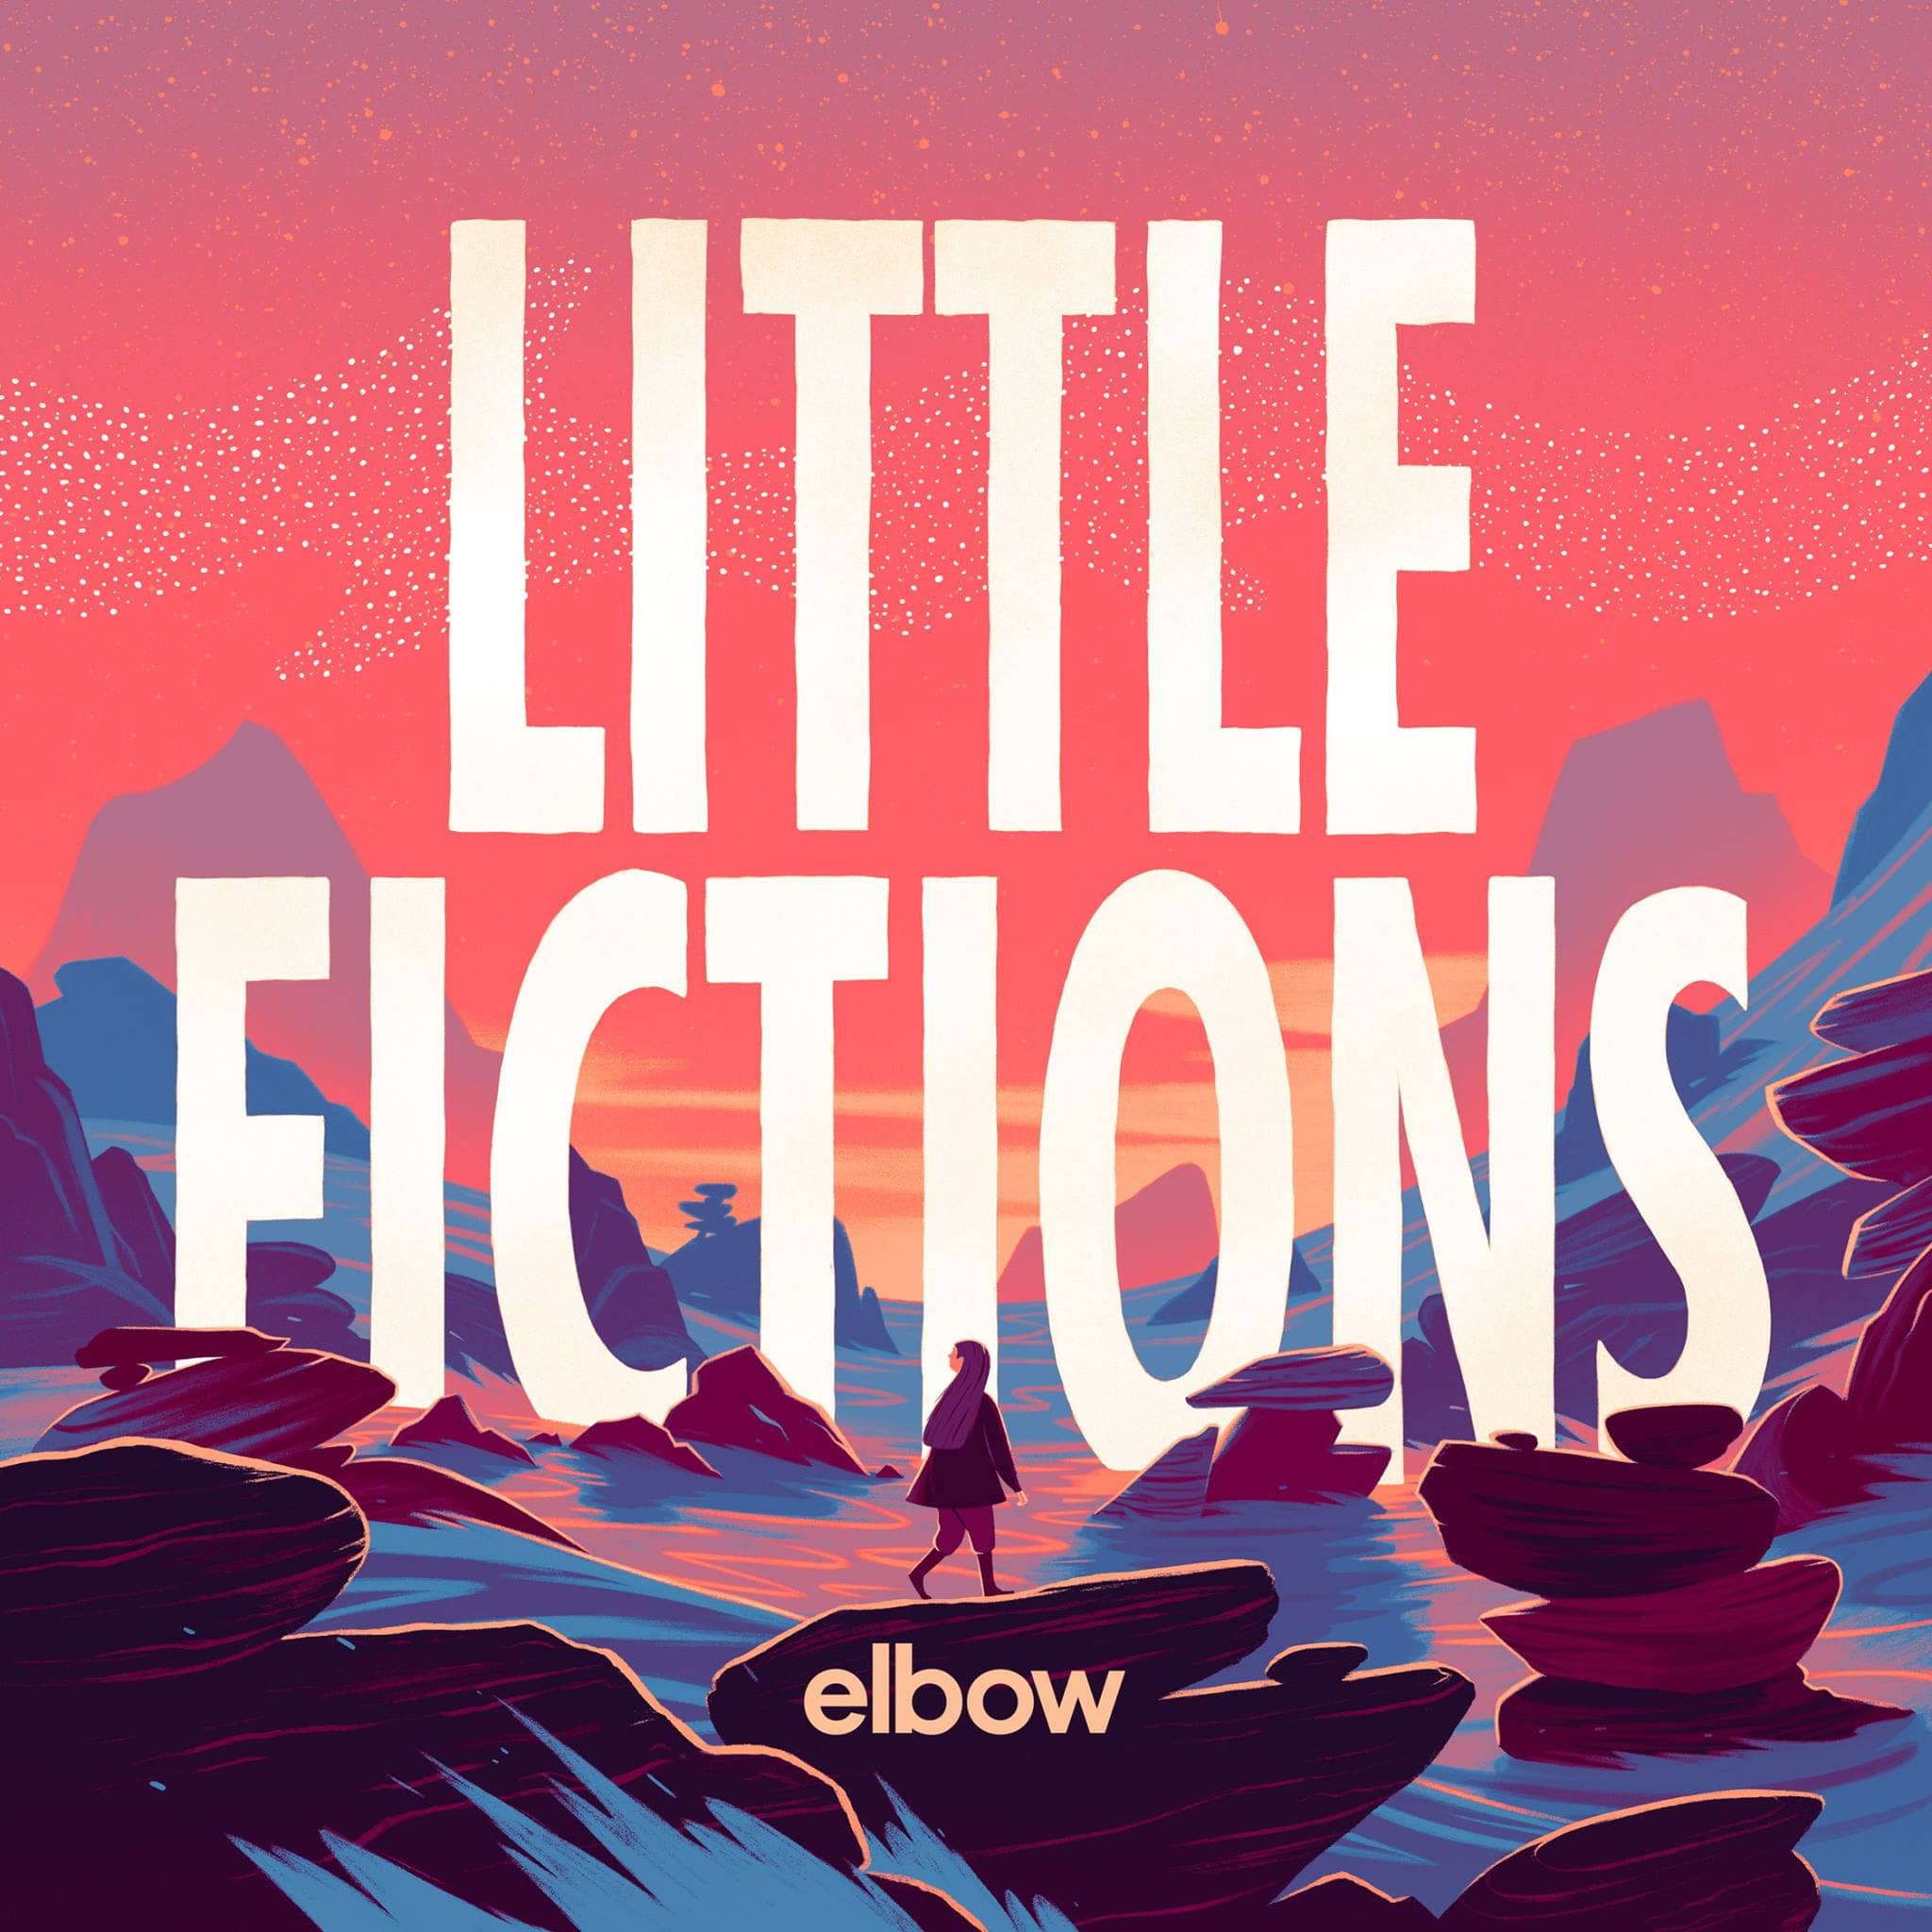 little fiction elbow